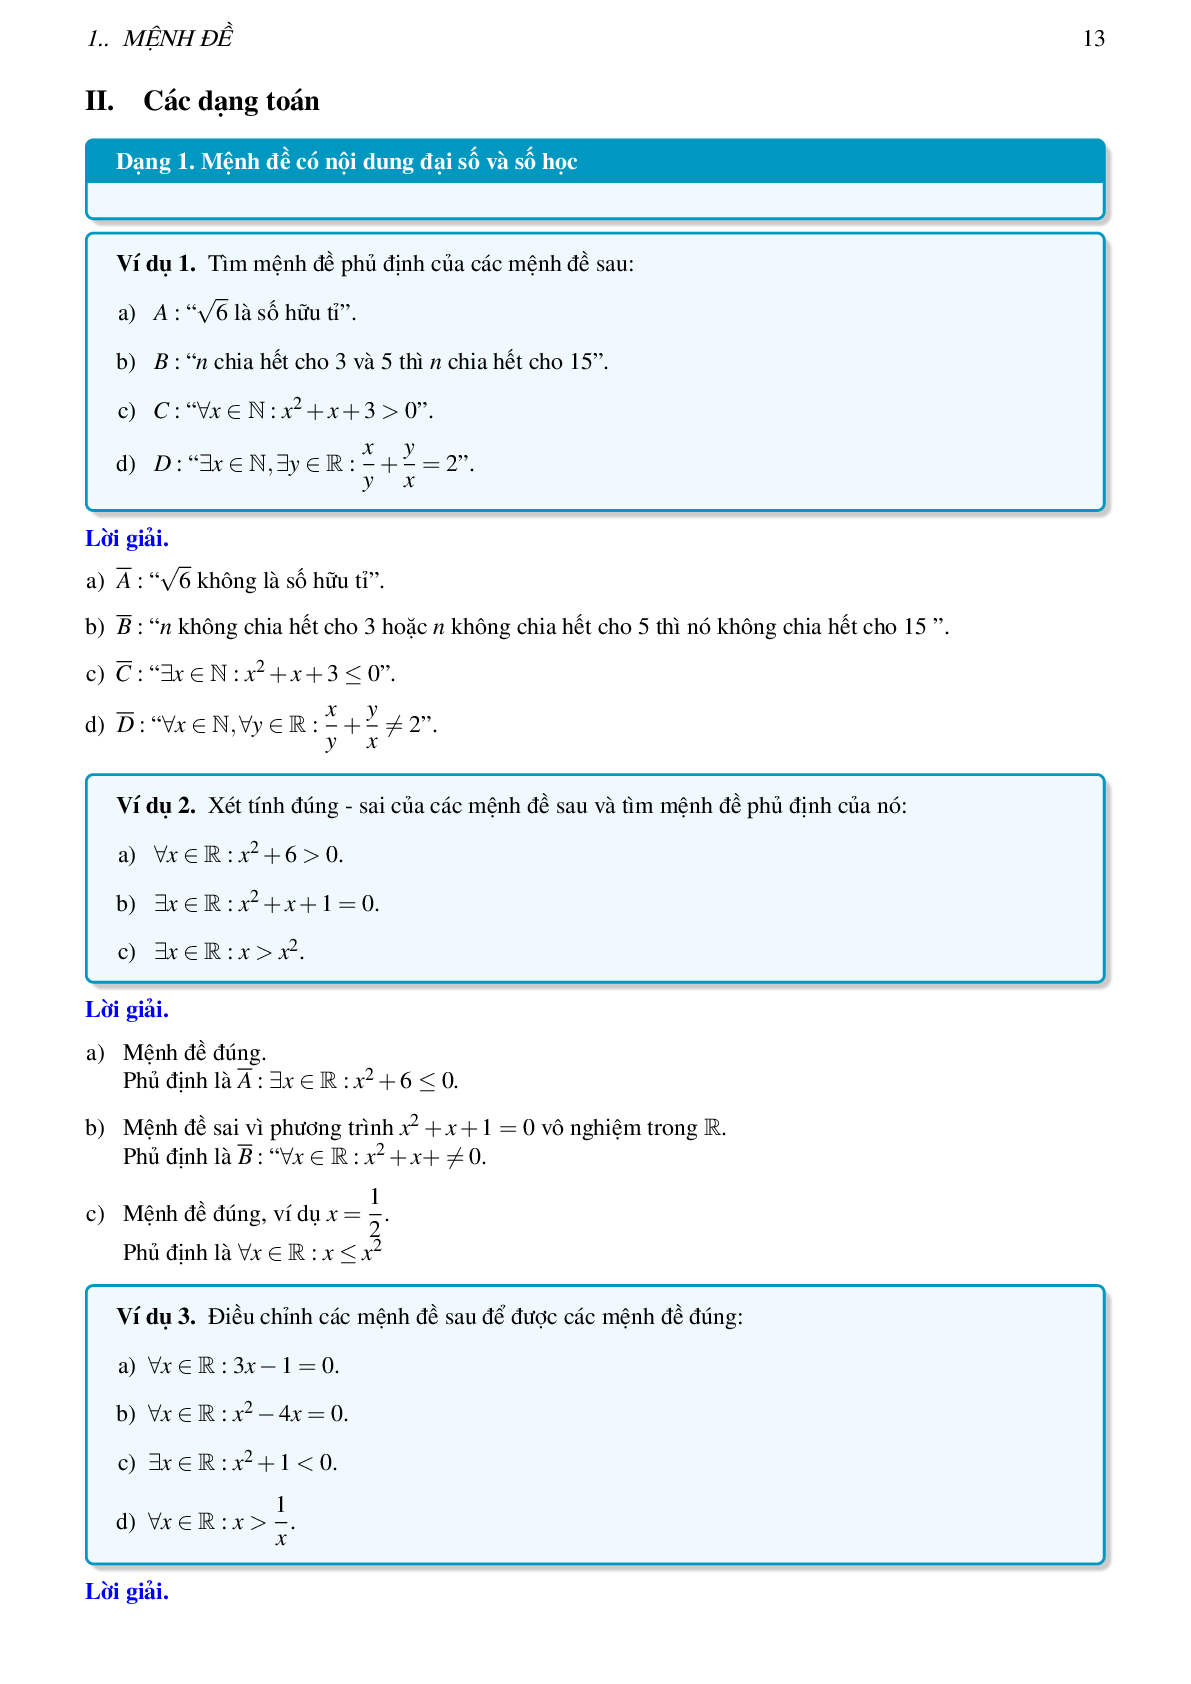 Lý thuyết, các dạng toán và bài tập mệnh đề và tập hợp (trang 3)